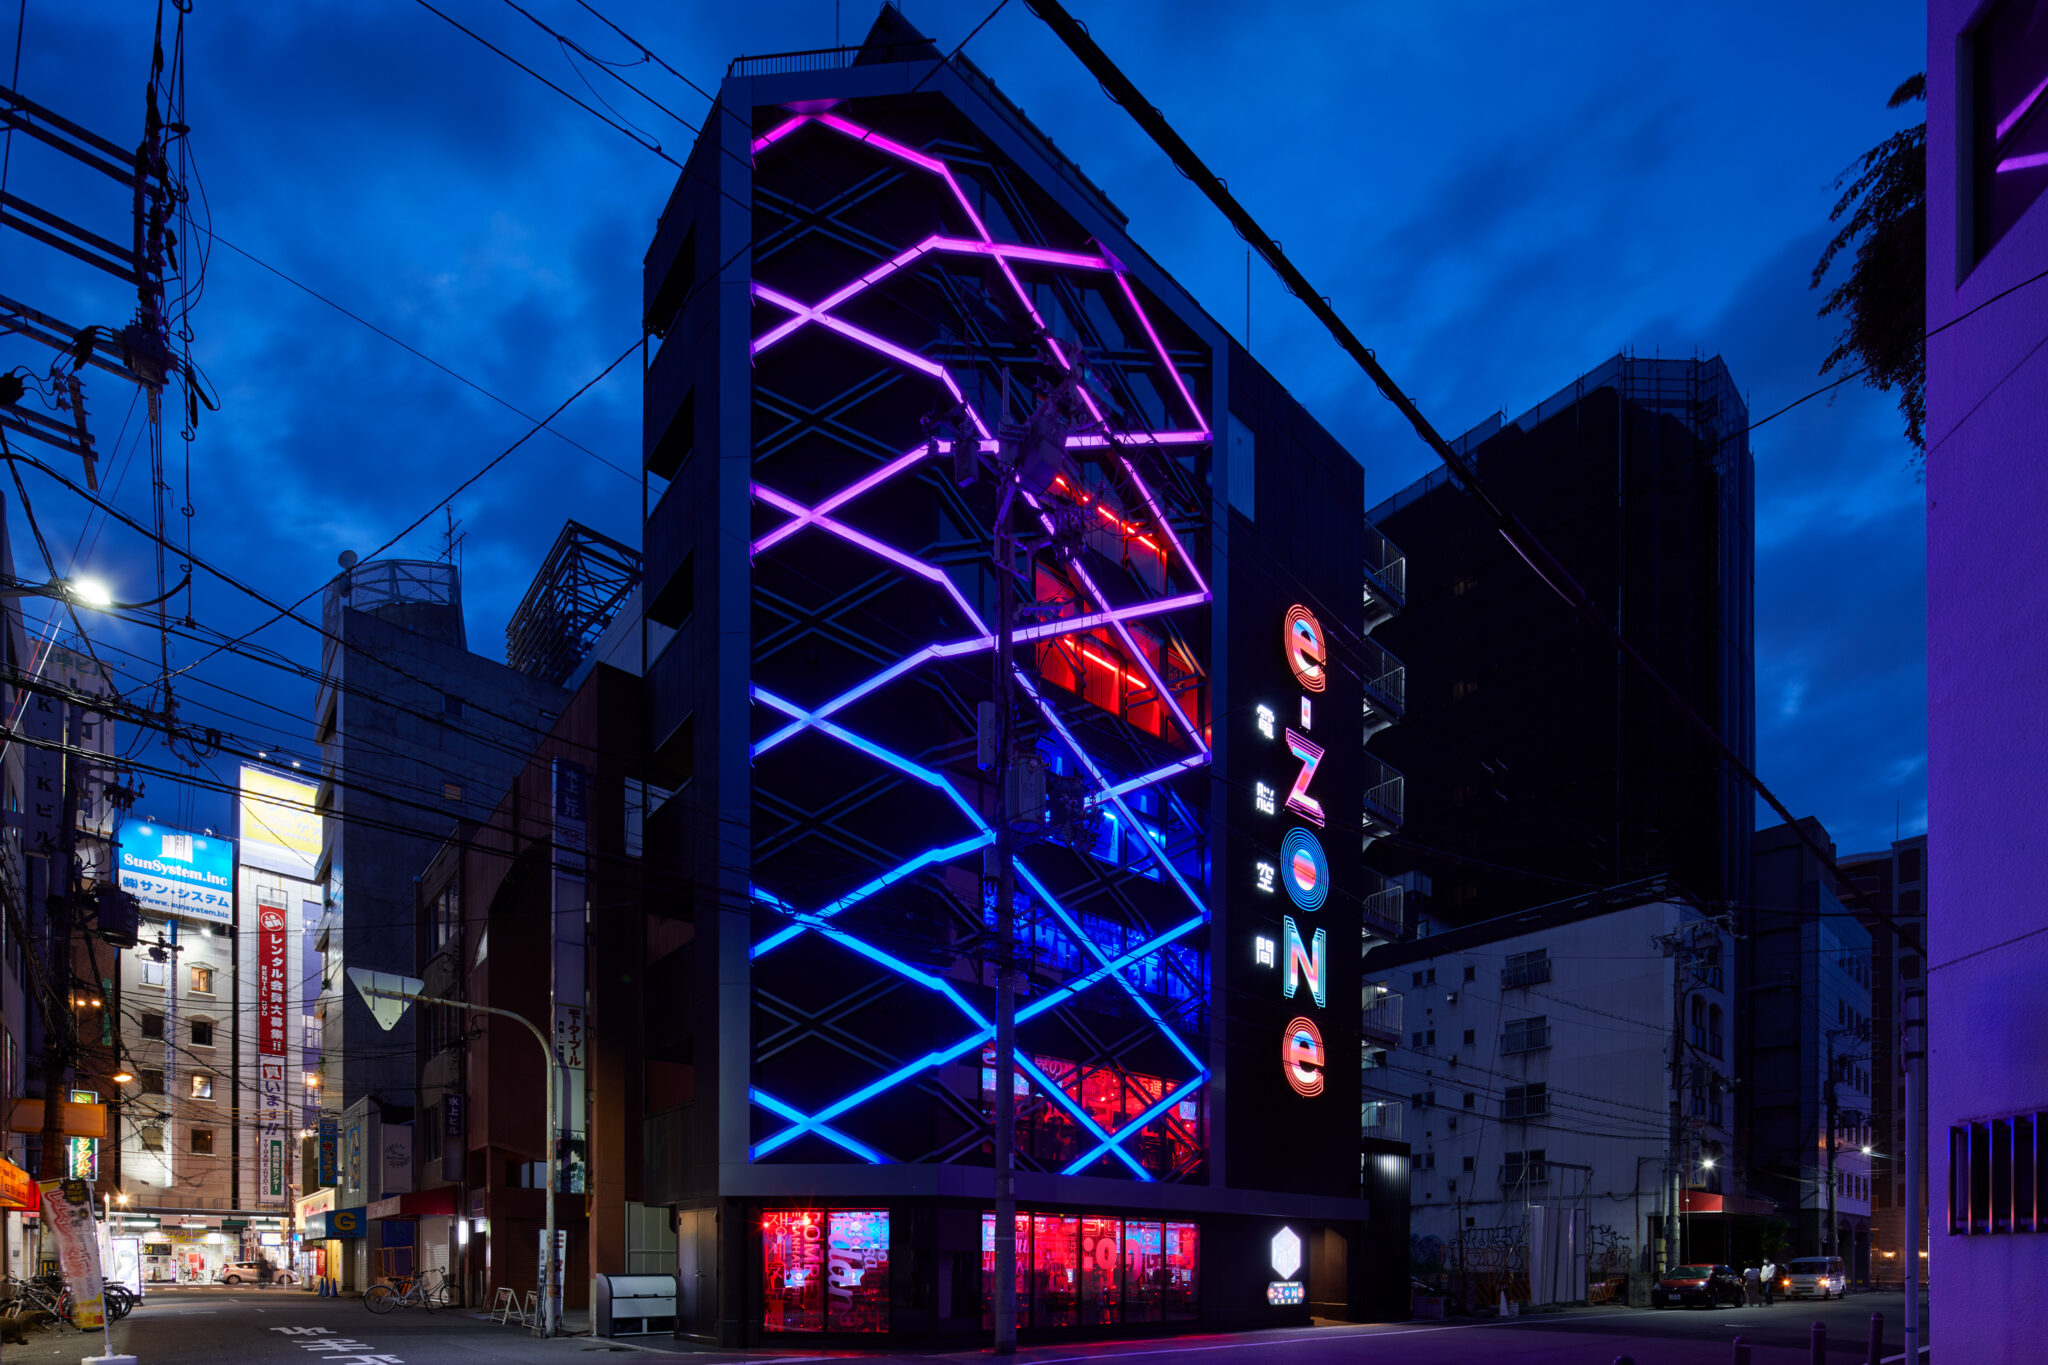 江戸歌舞伎をテーマとした新築ホテルプロジェクト始動！歌舞伎とエンターテインメントが交わる特別な宿泊体験